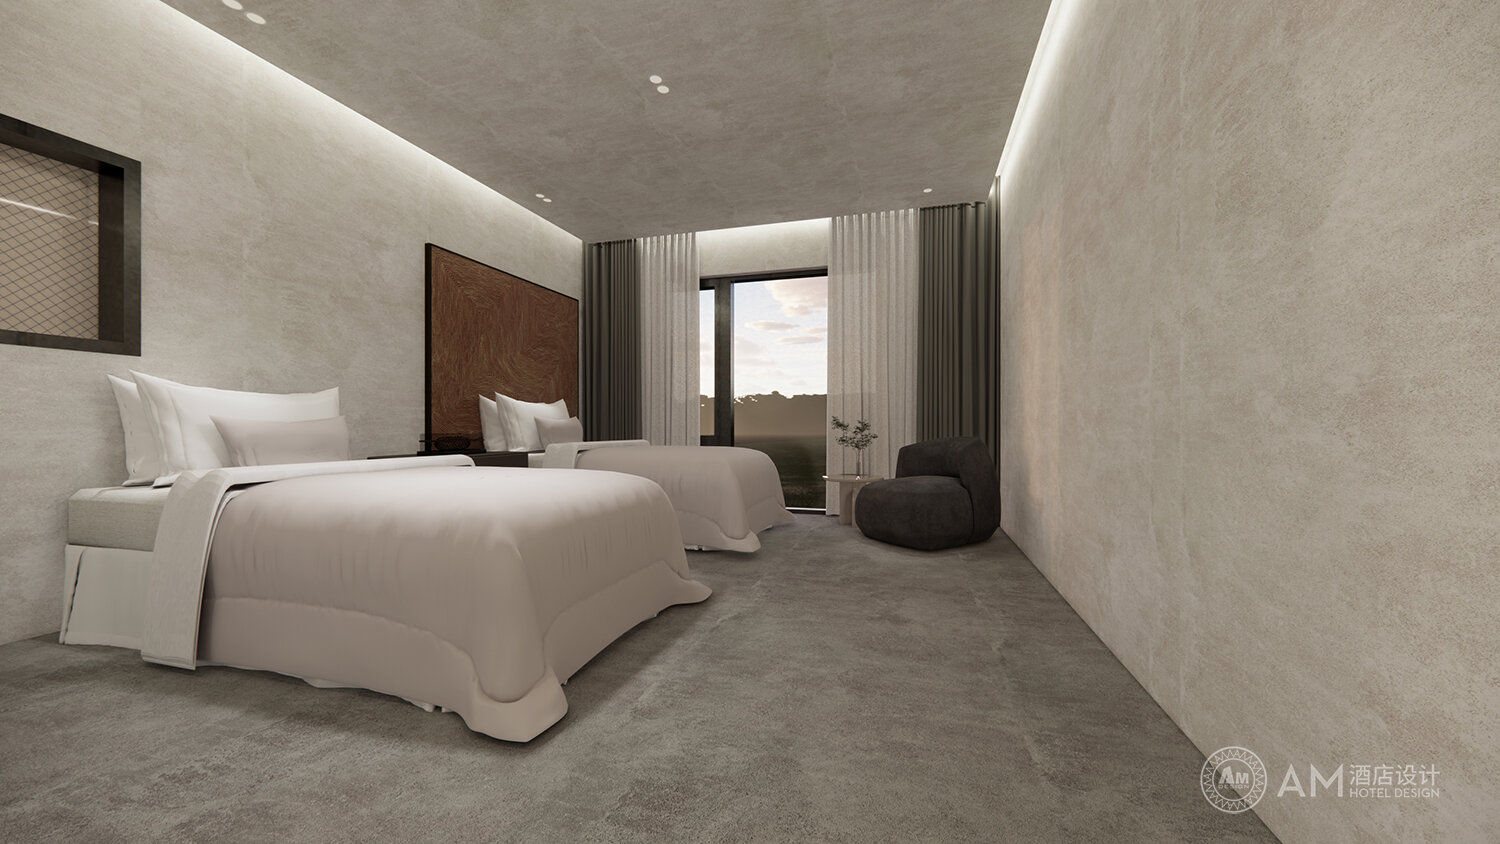 AM DESIGN | Hotel room design of qianjianyuan in Jixian, Tianjin